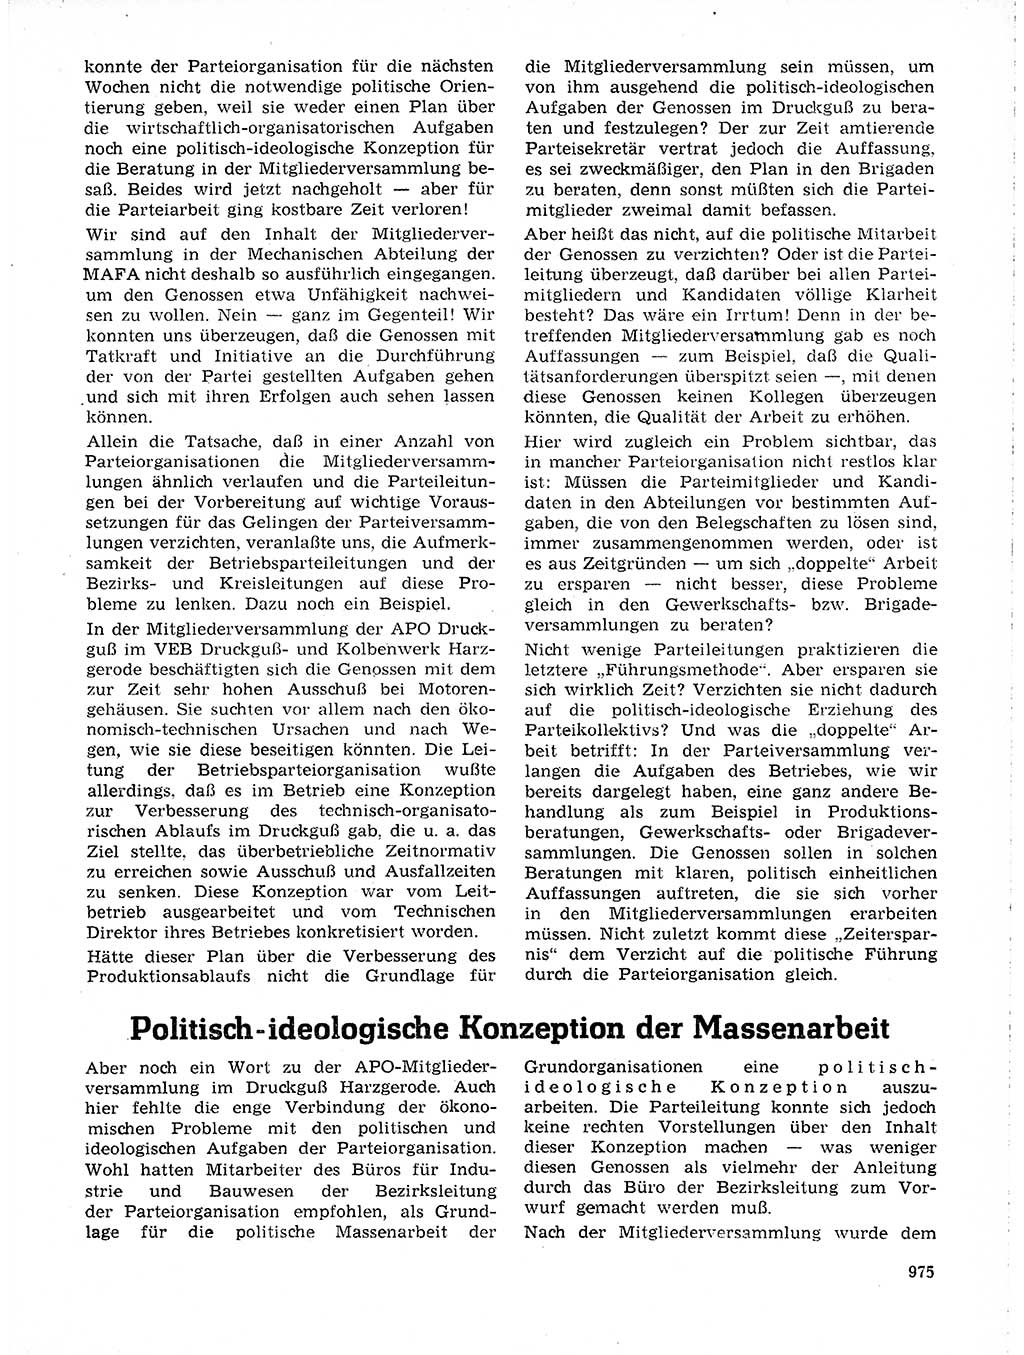 Neuer Weg (NW), Organ des Zentralkomitees (ZK) der SED (Sozialistische Einheitspartei Deutschlands) für Fragen des Parteilebens, 19. Jahrgang [Deutsche Demokratische Republik (DDR)] 1964, Seite 975 (NW ZK SED DDR 1964, S. 975)